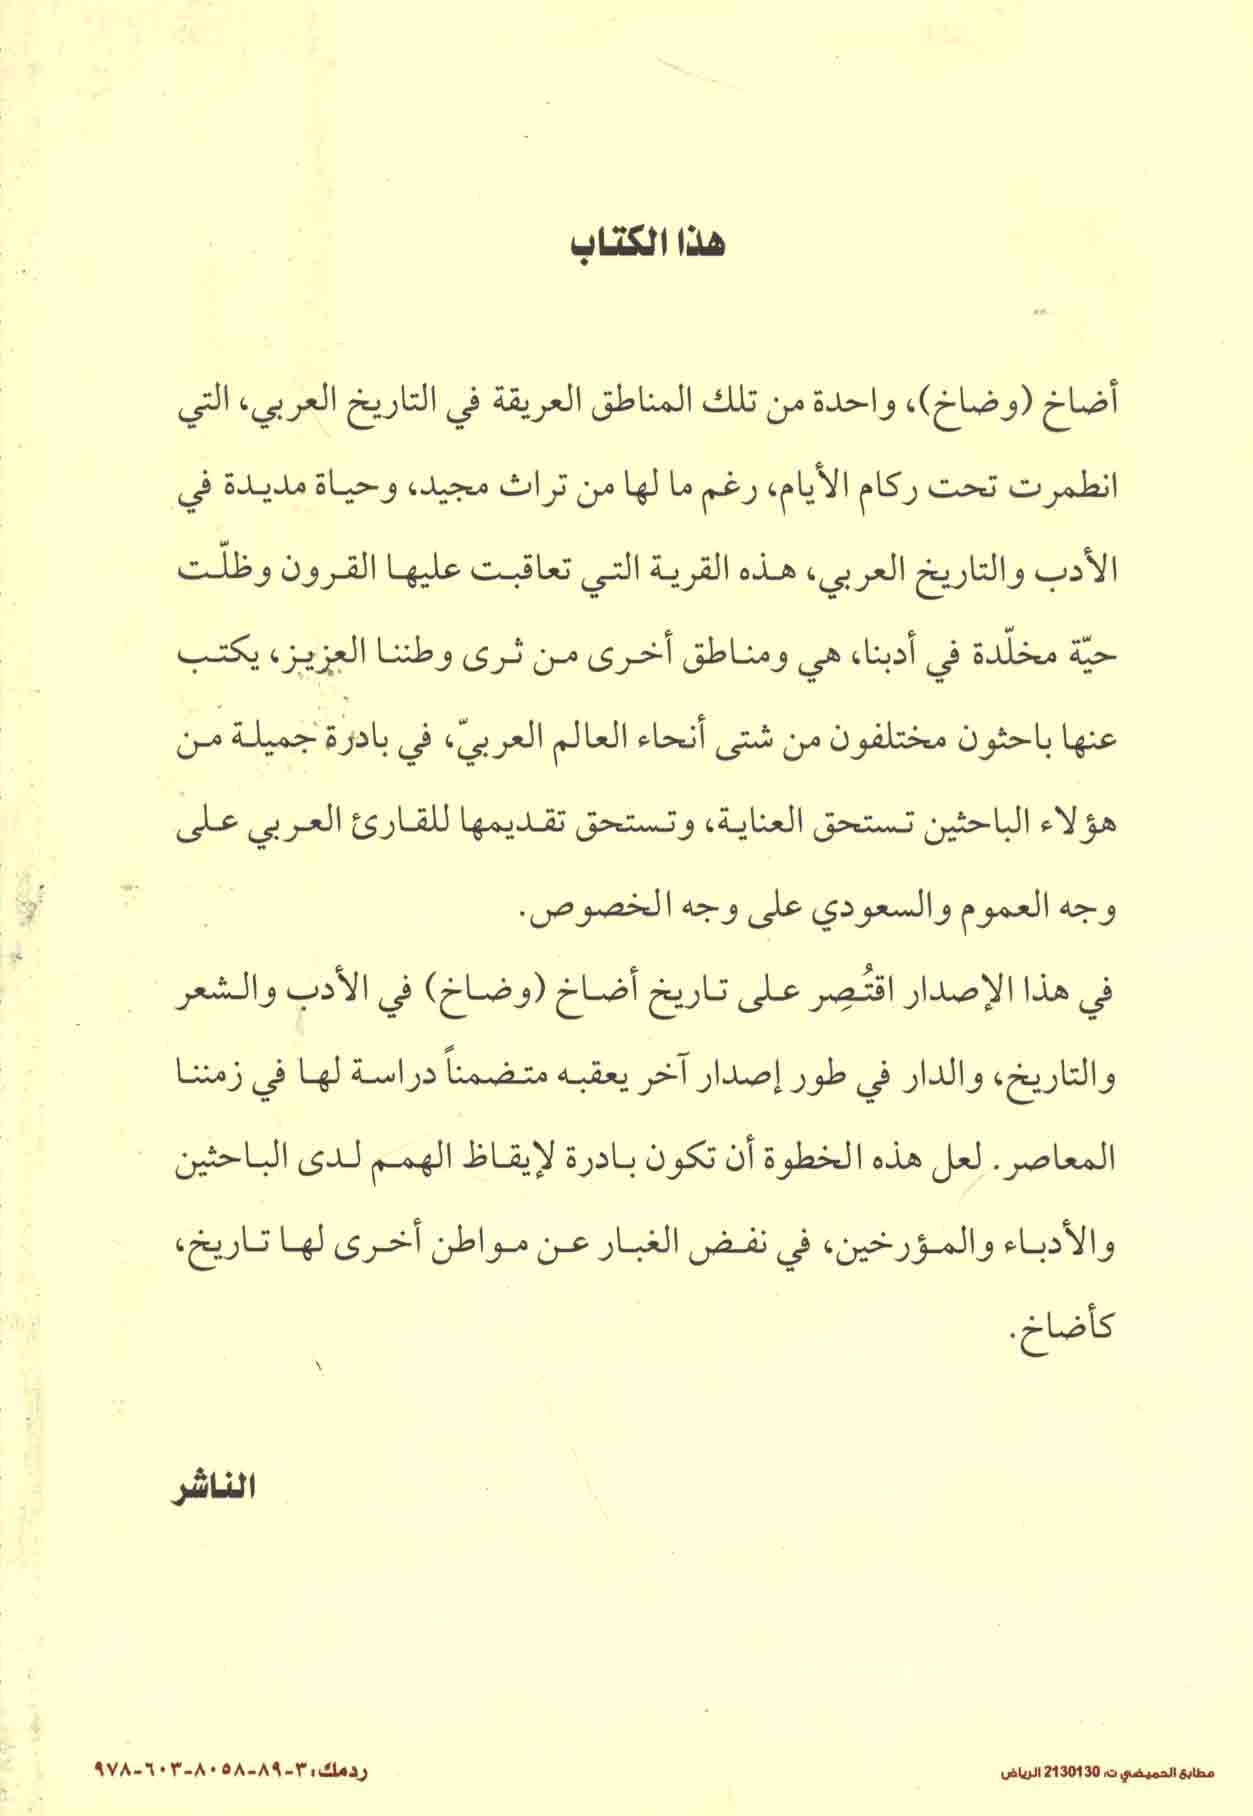 أضـاخ بـيـن ذاكـرة الـتـاريـخ و الـشـعـر Adakh Bayna Dhakirat Al Tarikh Wa Al Shir Arabicbookshop Net Supplier Of Arabic Books